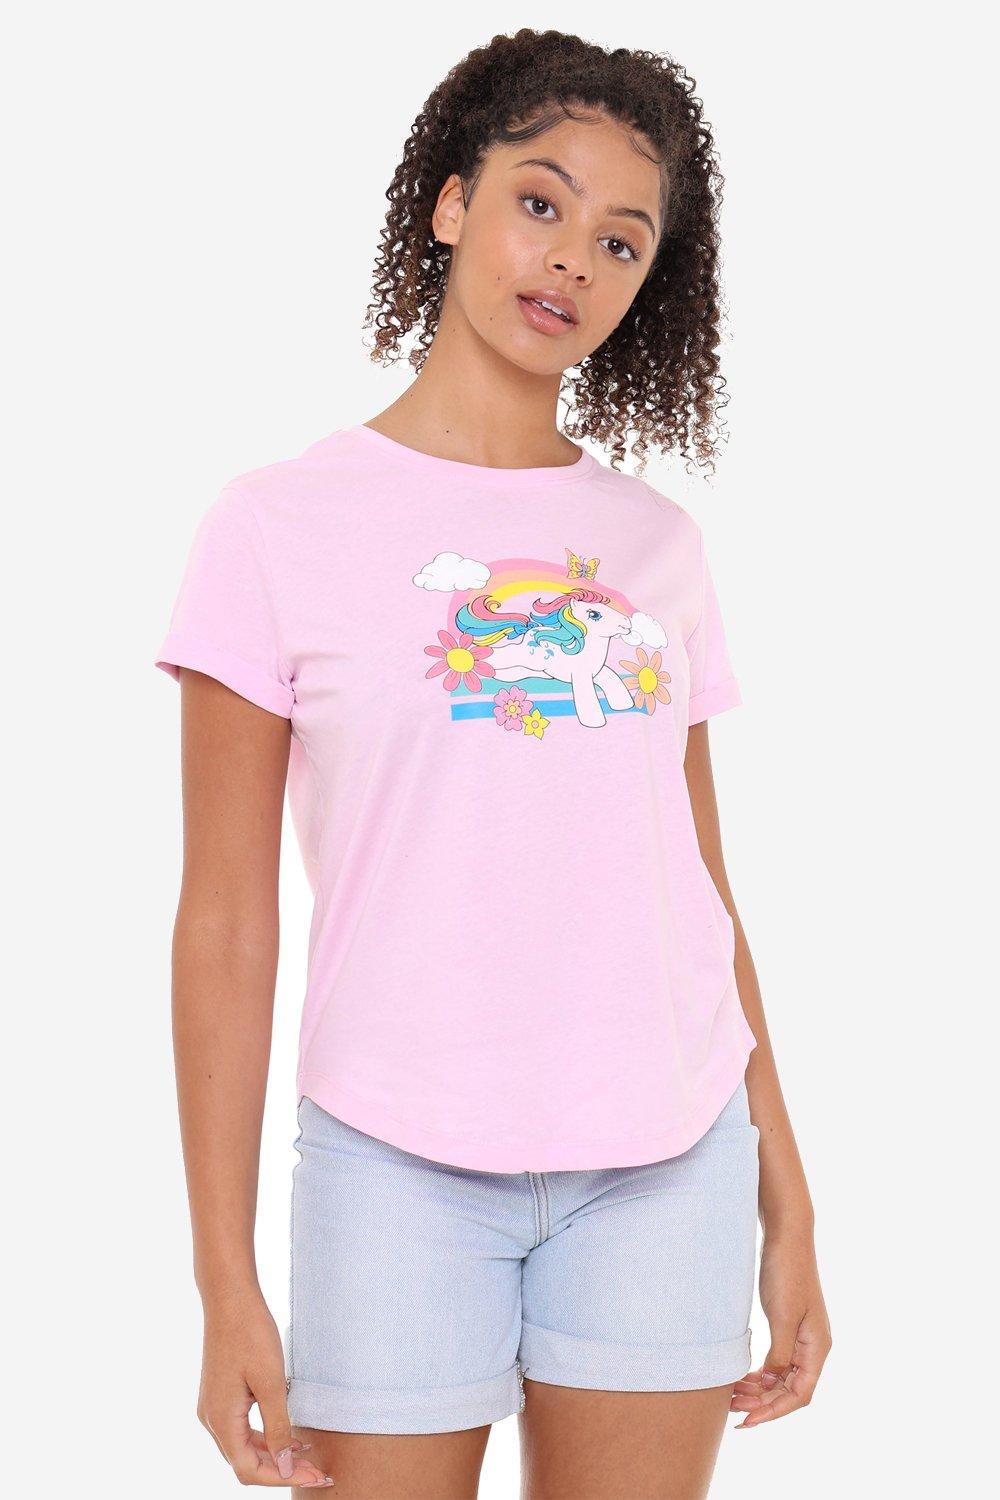 leaping rainbows womens fashion t-shirt